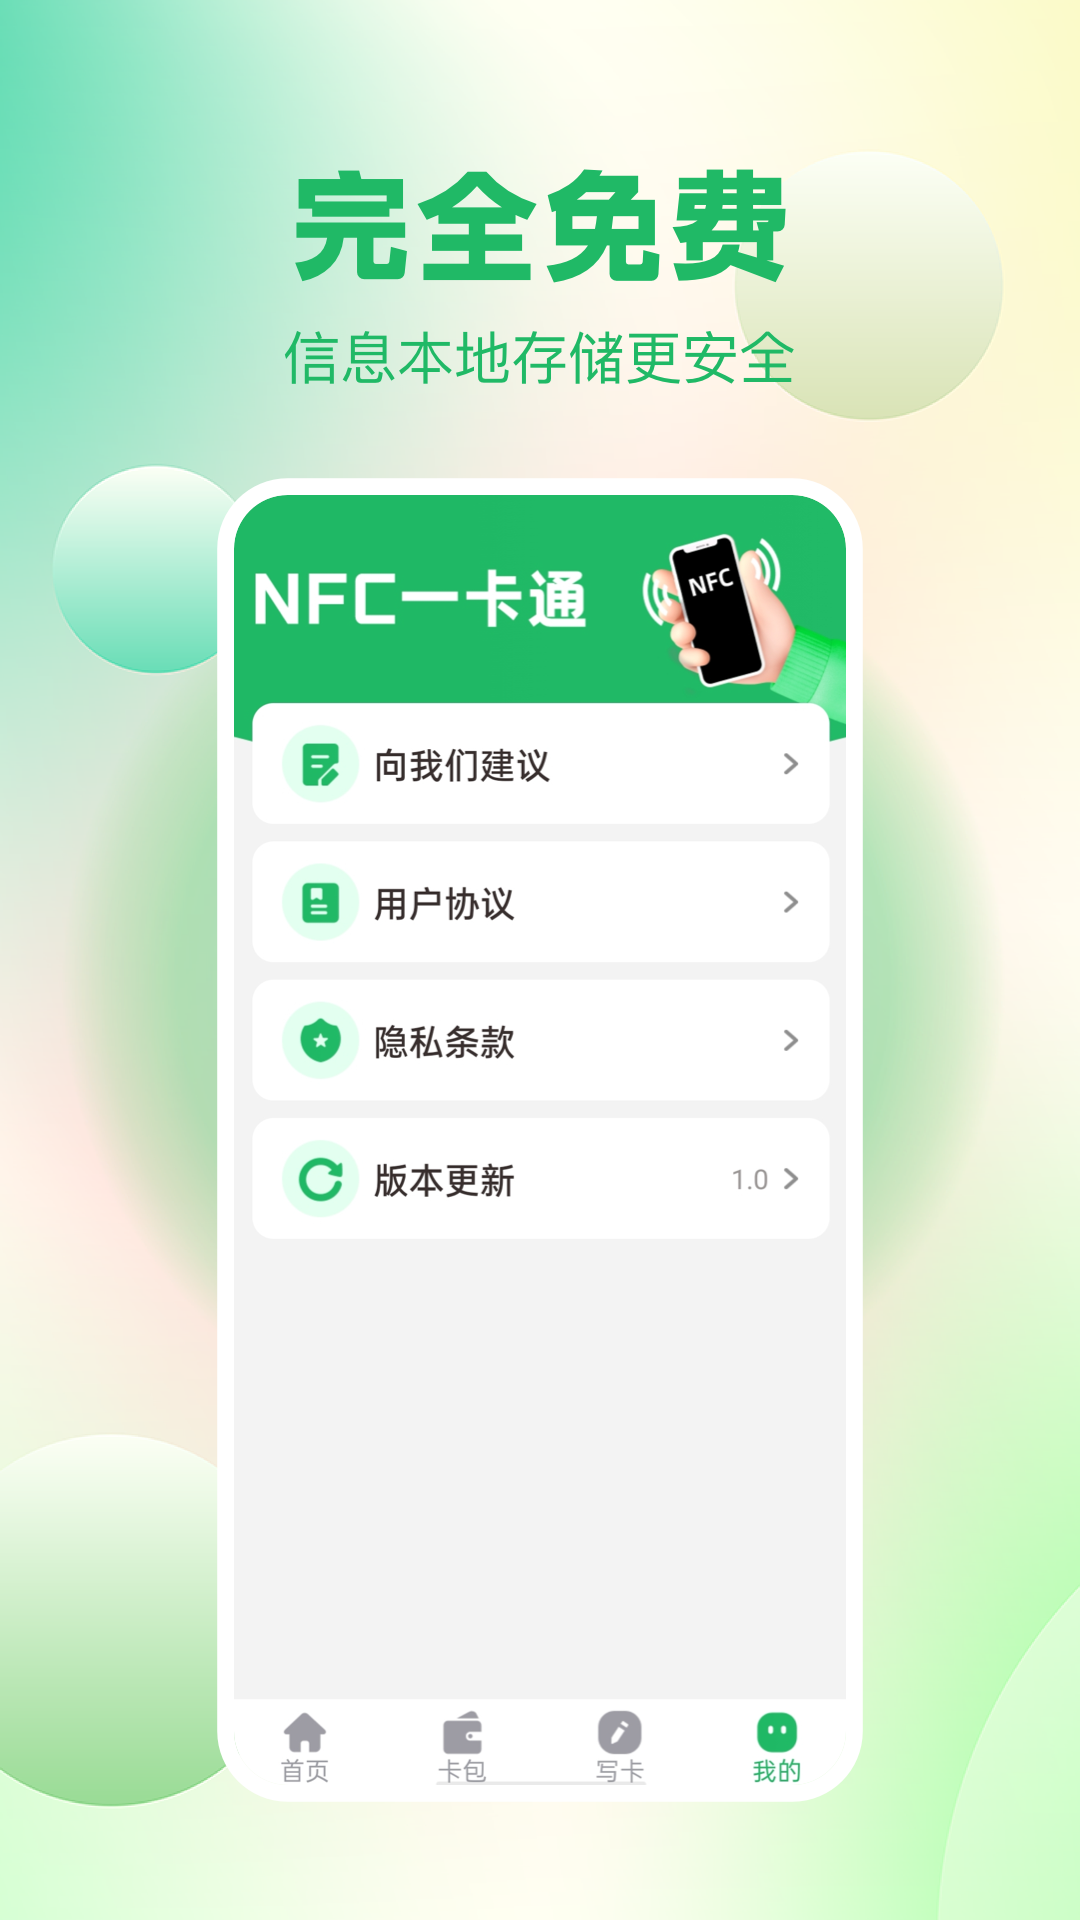 NFCv1.0.0 °